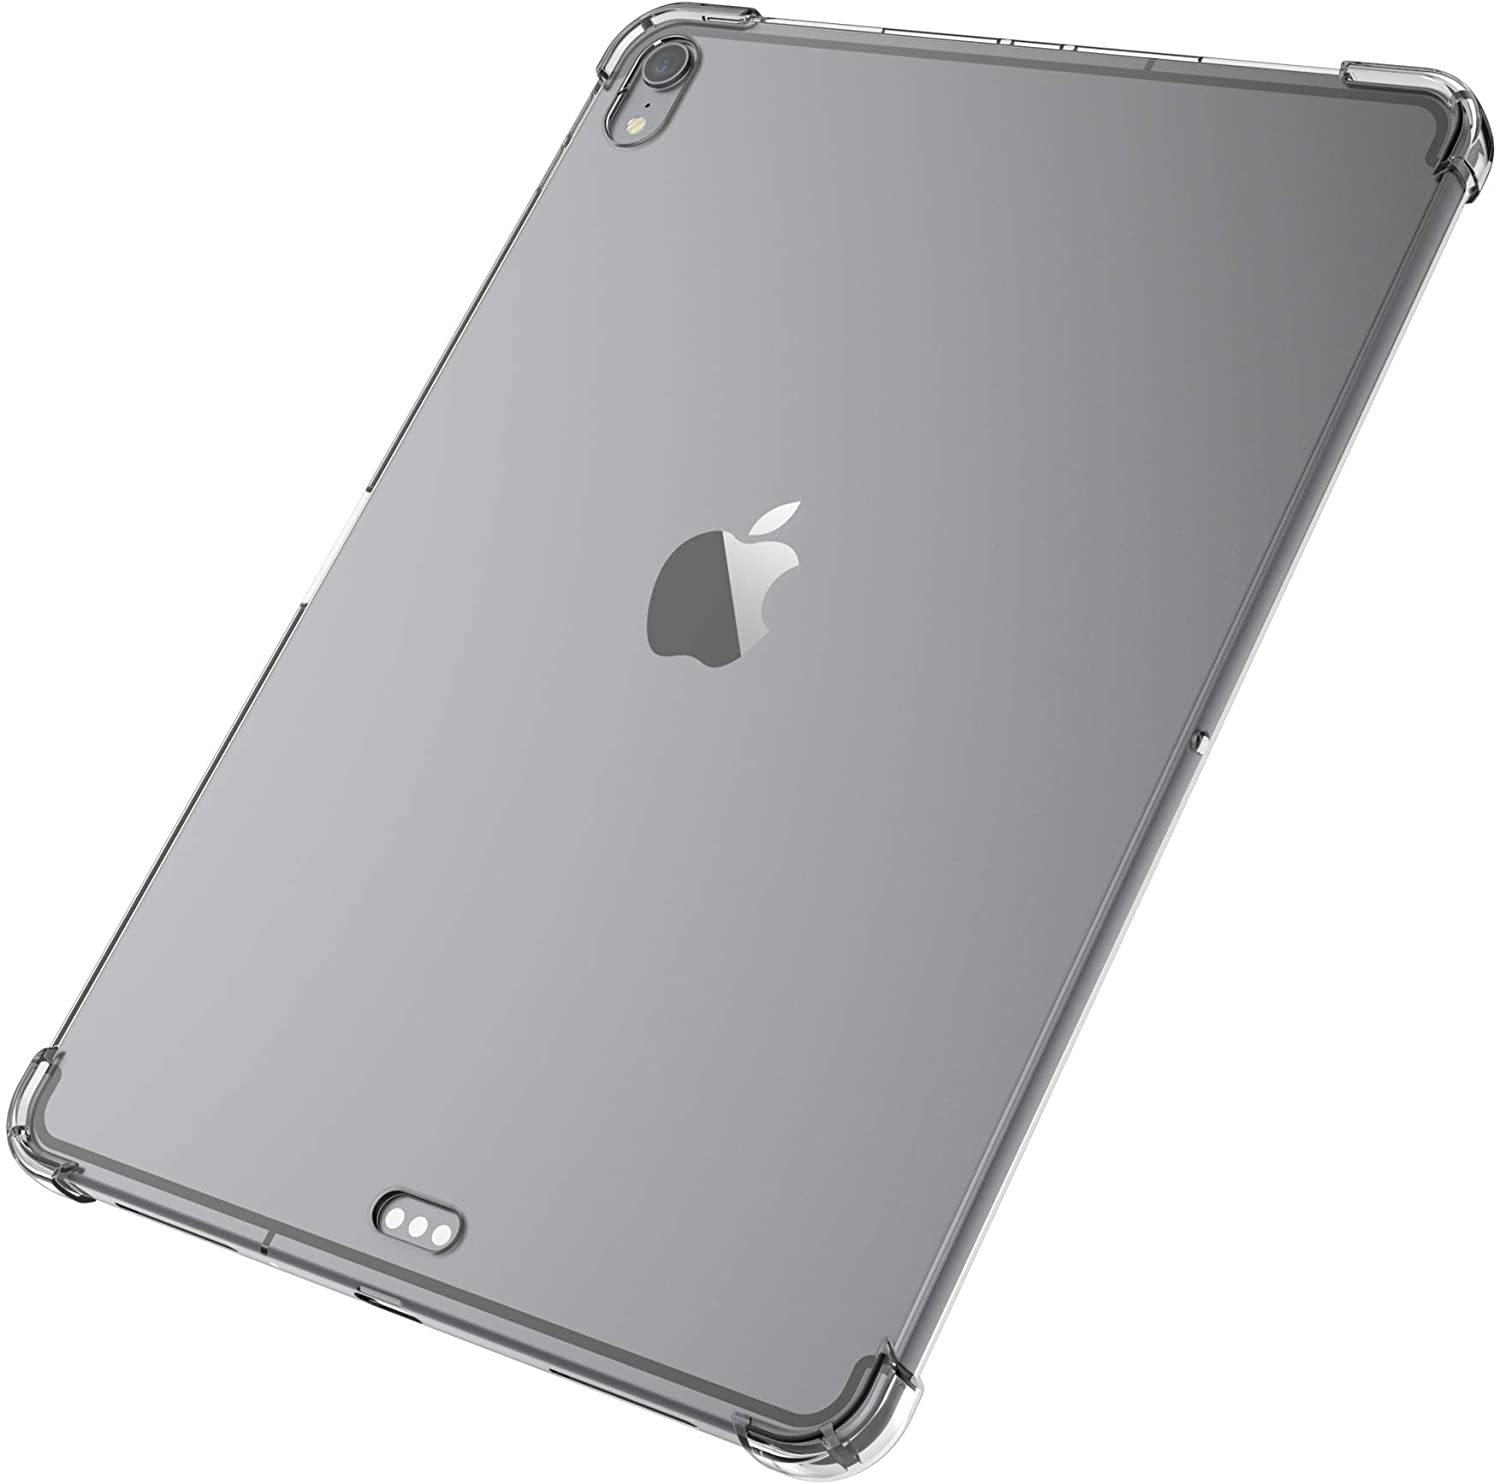 Carcasa Rígida Antigolpe iPad Pro 12.9 2015 / 2017